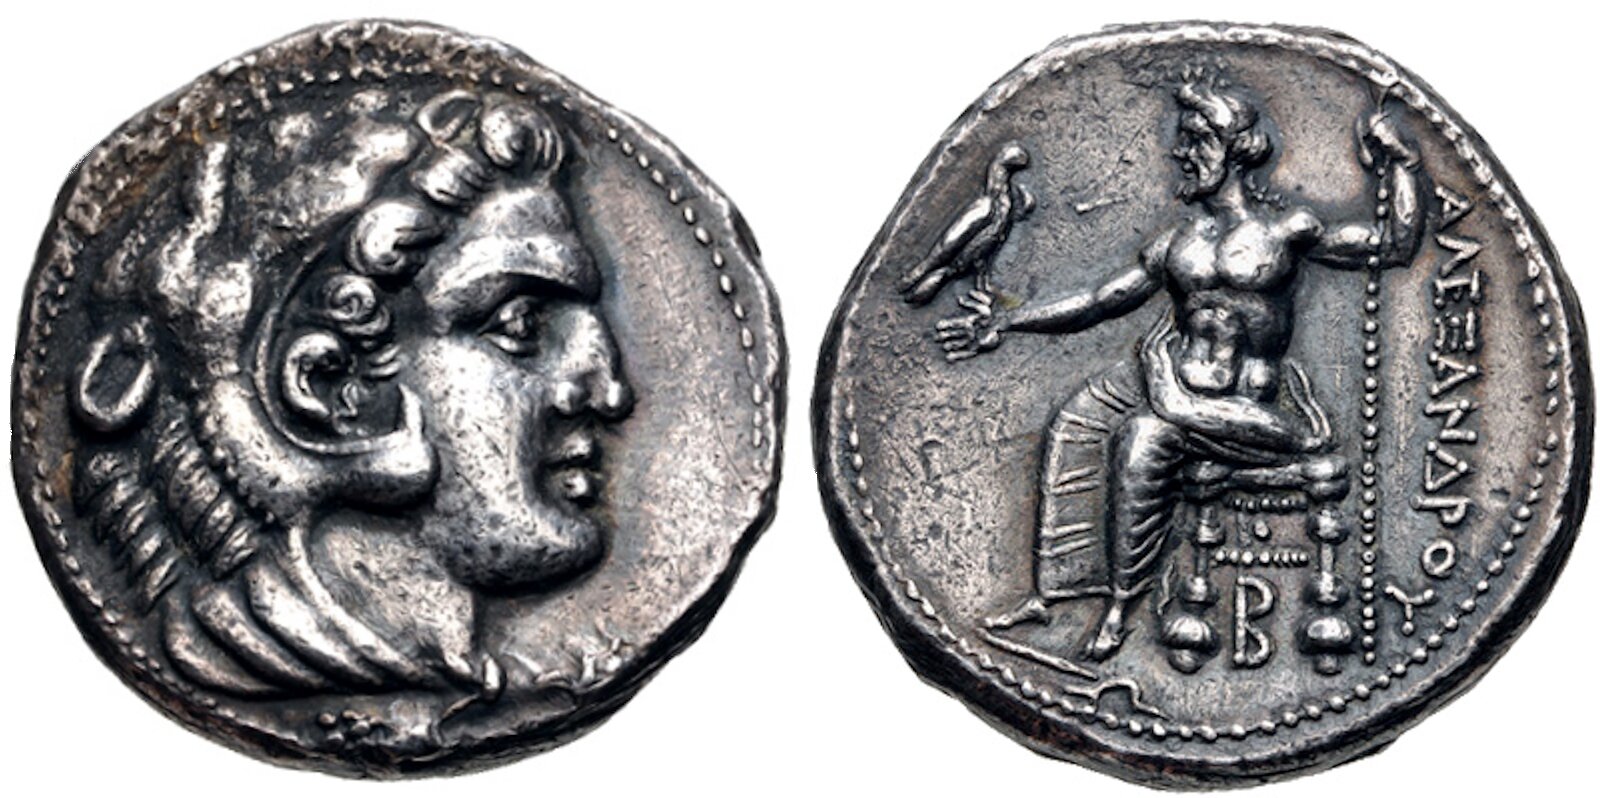 Zdjęcie przedstawia awers i rewers antycznej monety. Moneta przedstawia podobiznę Aleksandra Wielkiego. Na awersie widoczny jest prawy profil głowy mężczyzny. Na rewersie mężczyzna siedzi, na jego dłoni stoi ptak. Obok znajdują się napisy w języku greckim.